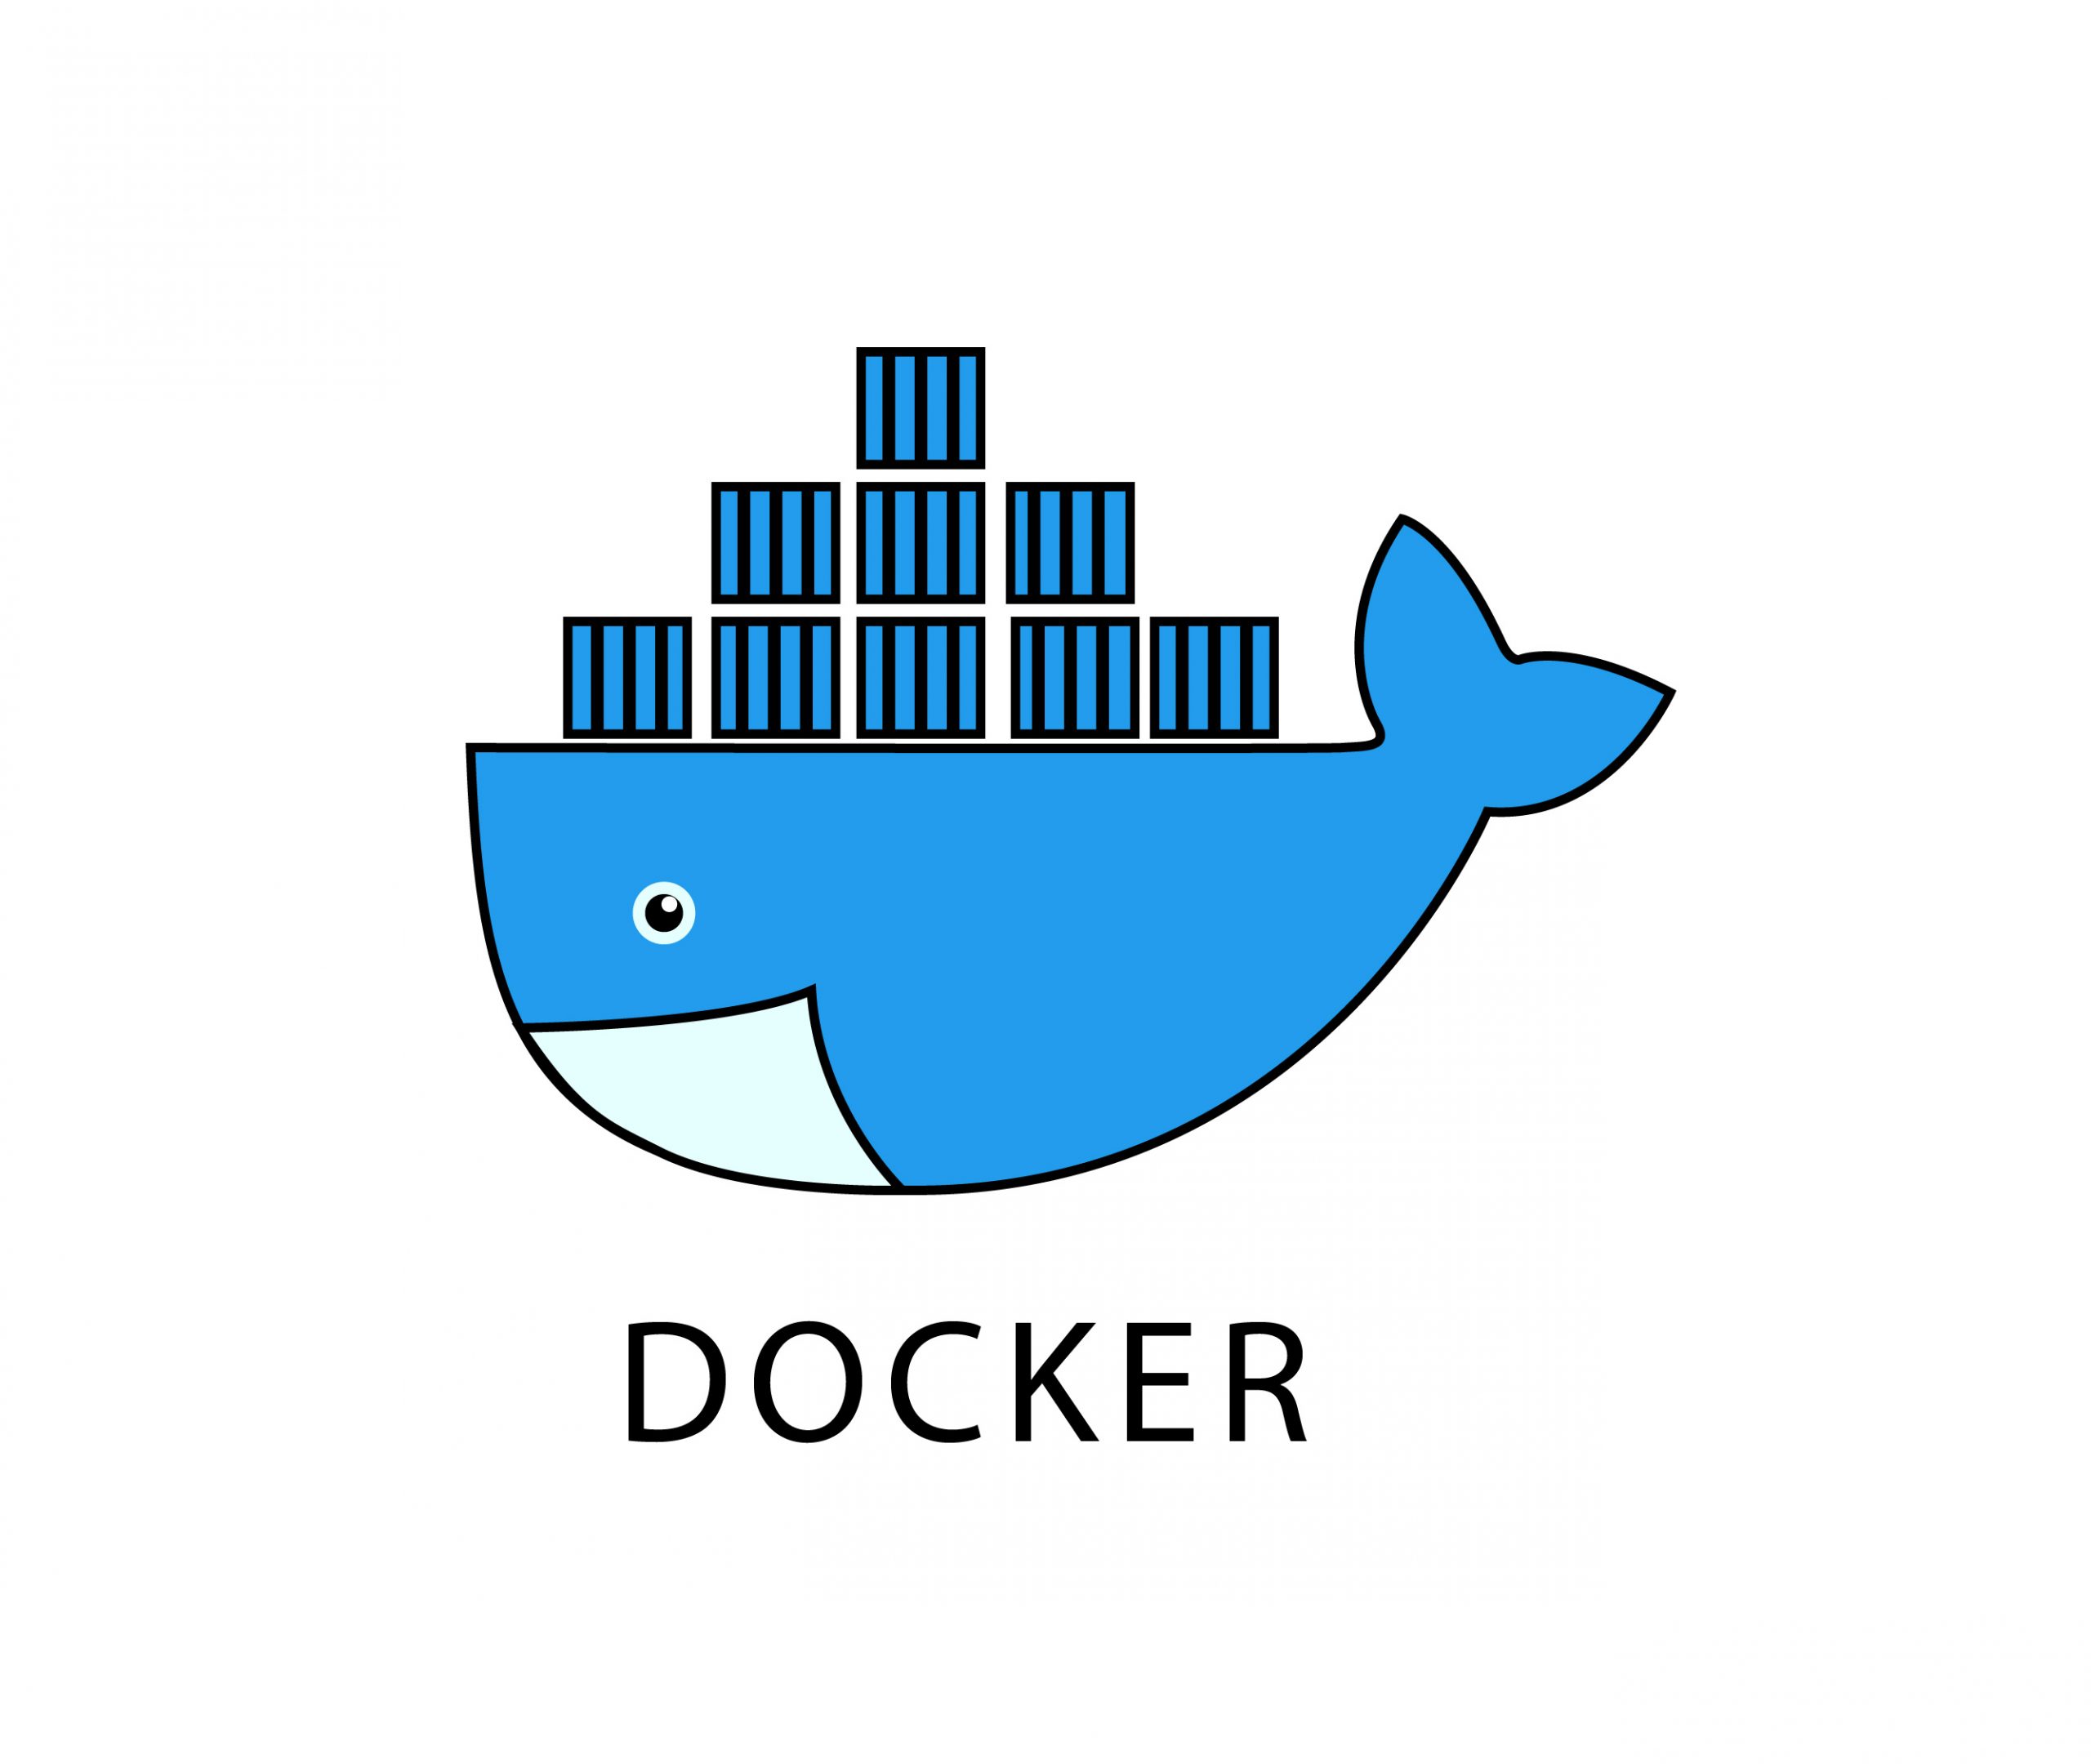 Docker学习笔记